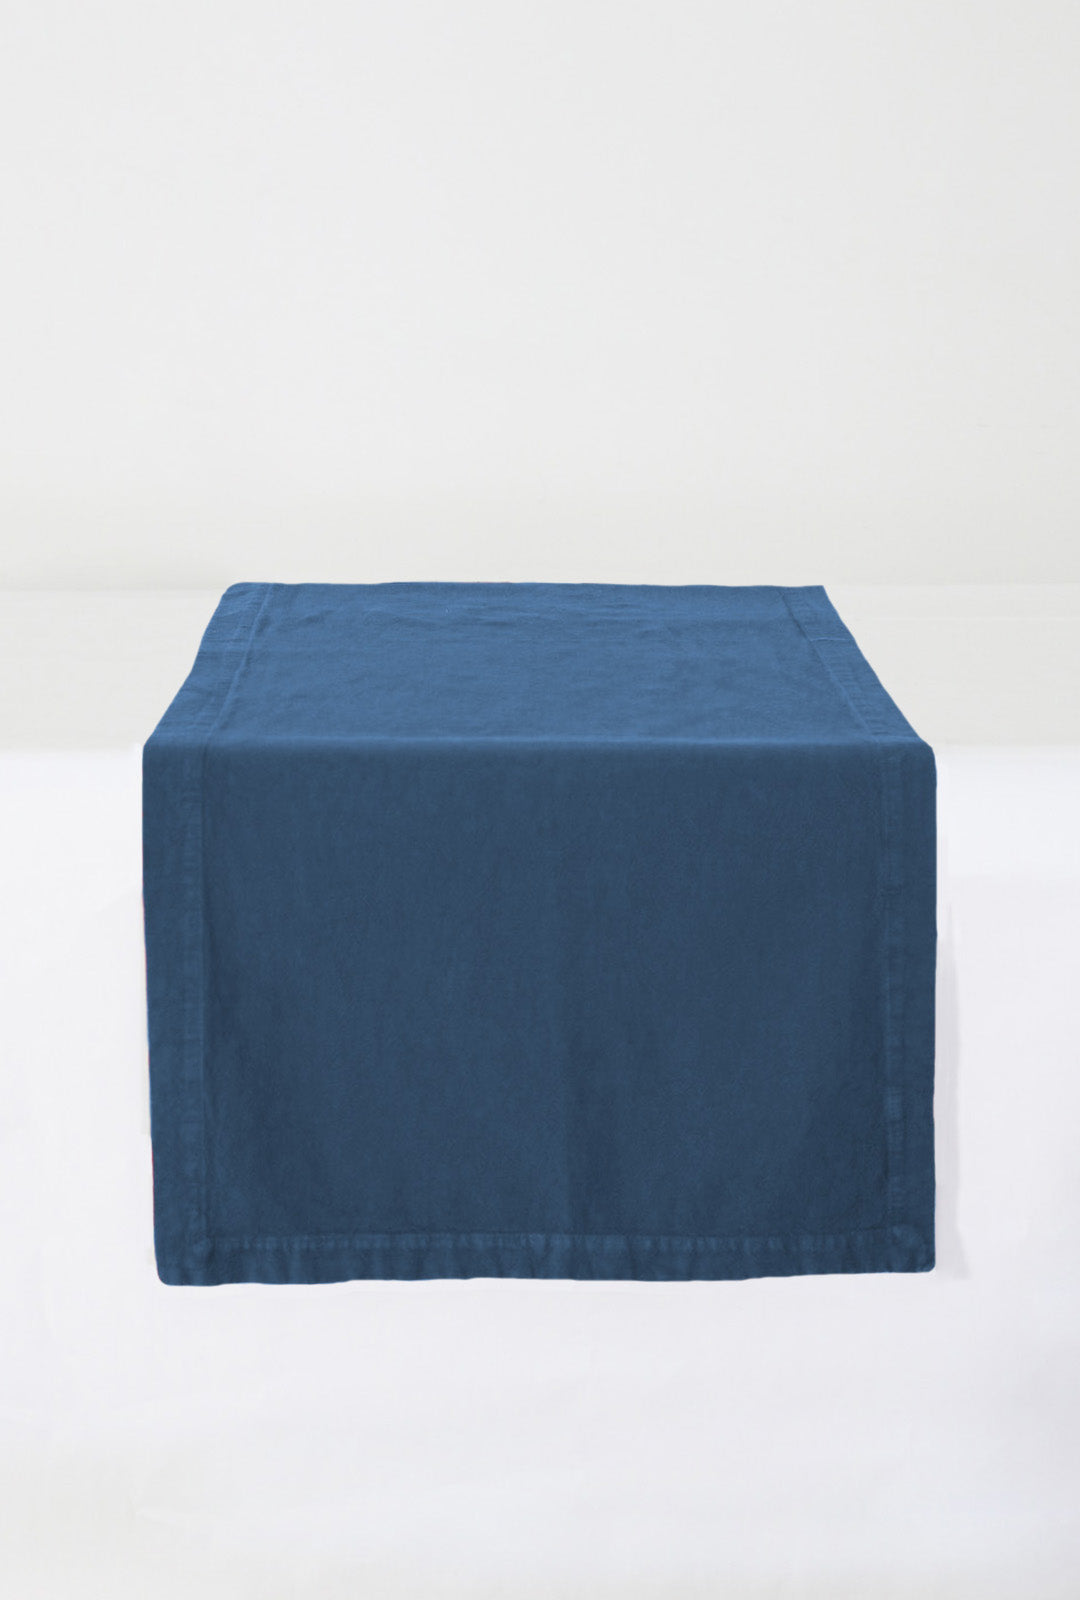 Tablecloth Linho Pure Soft